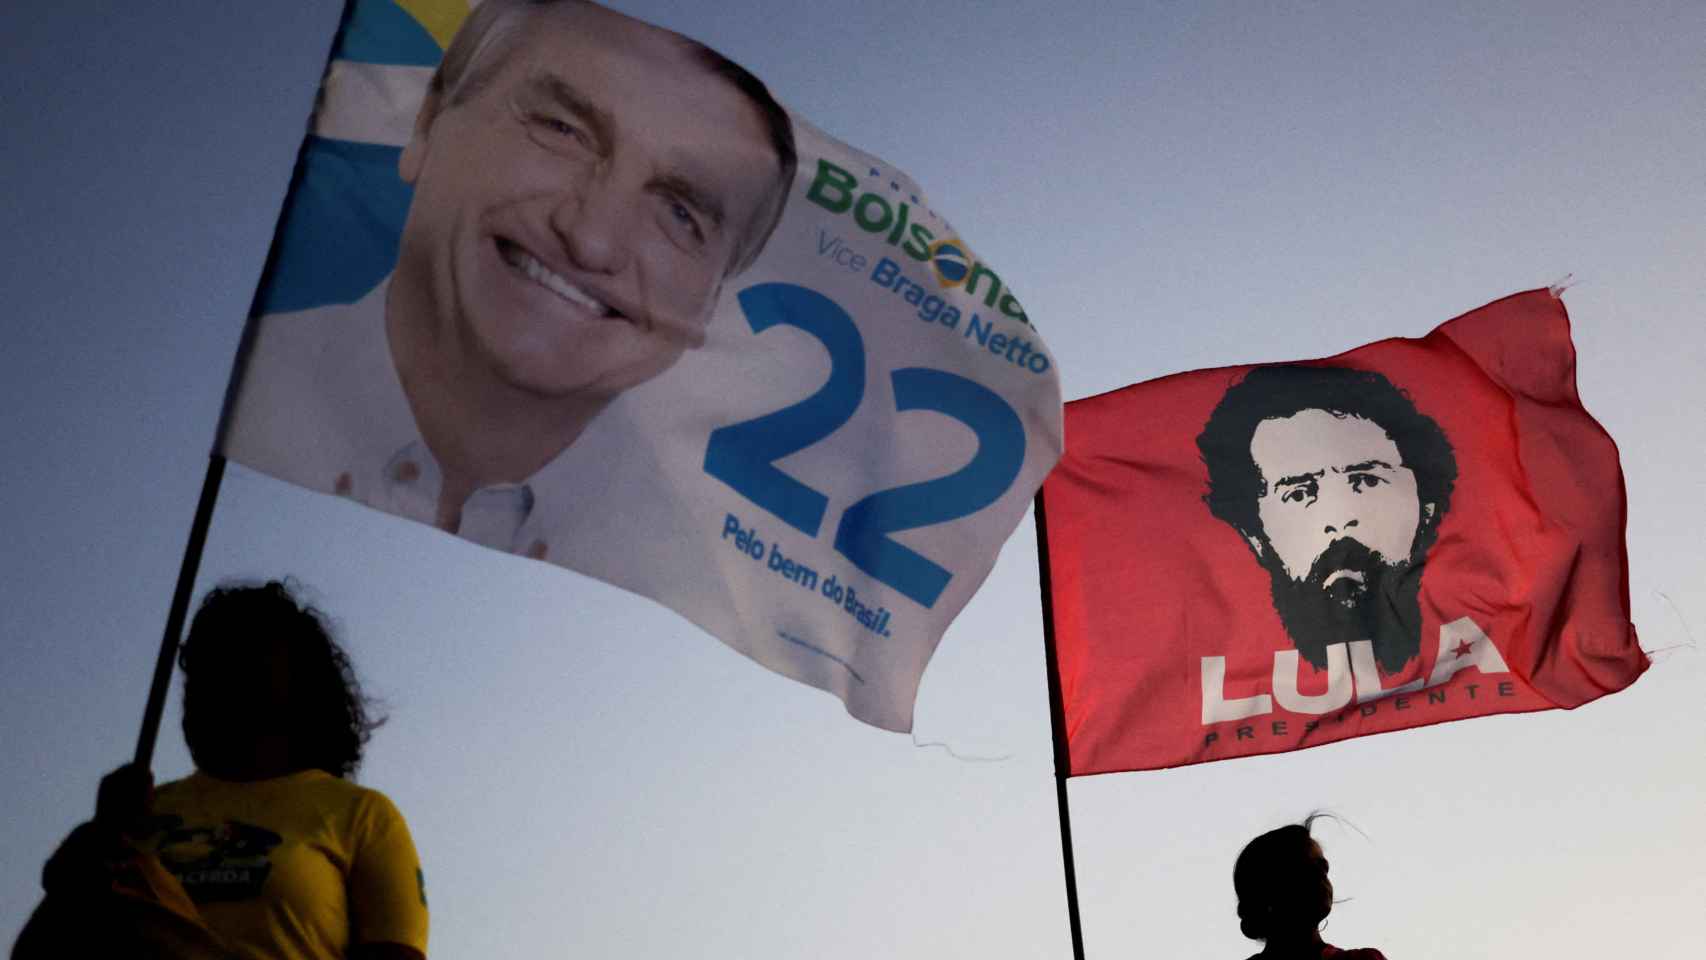 Banderas de Bolsonaro y Lula durante la campaña electoral en Brasil.